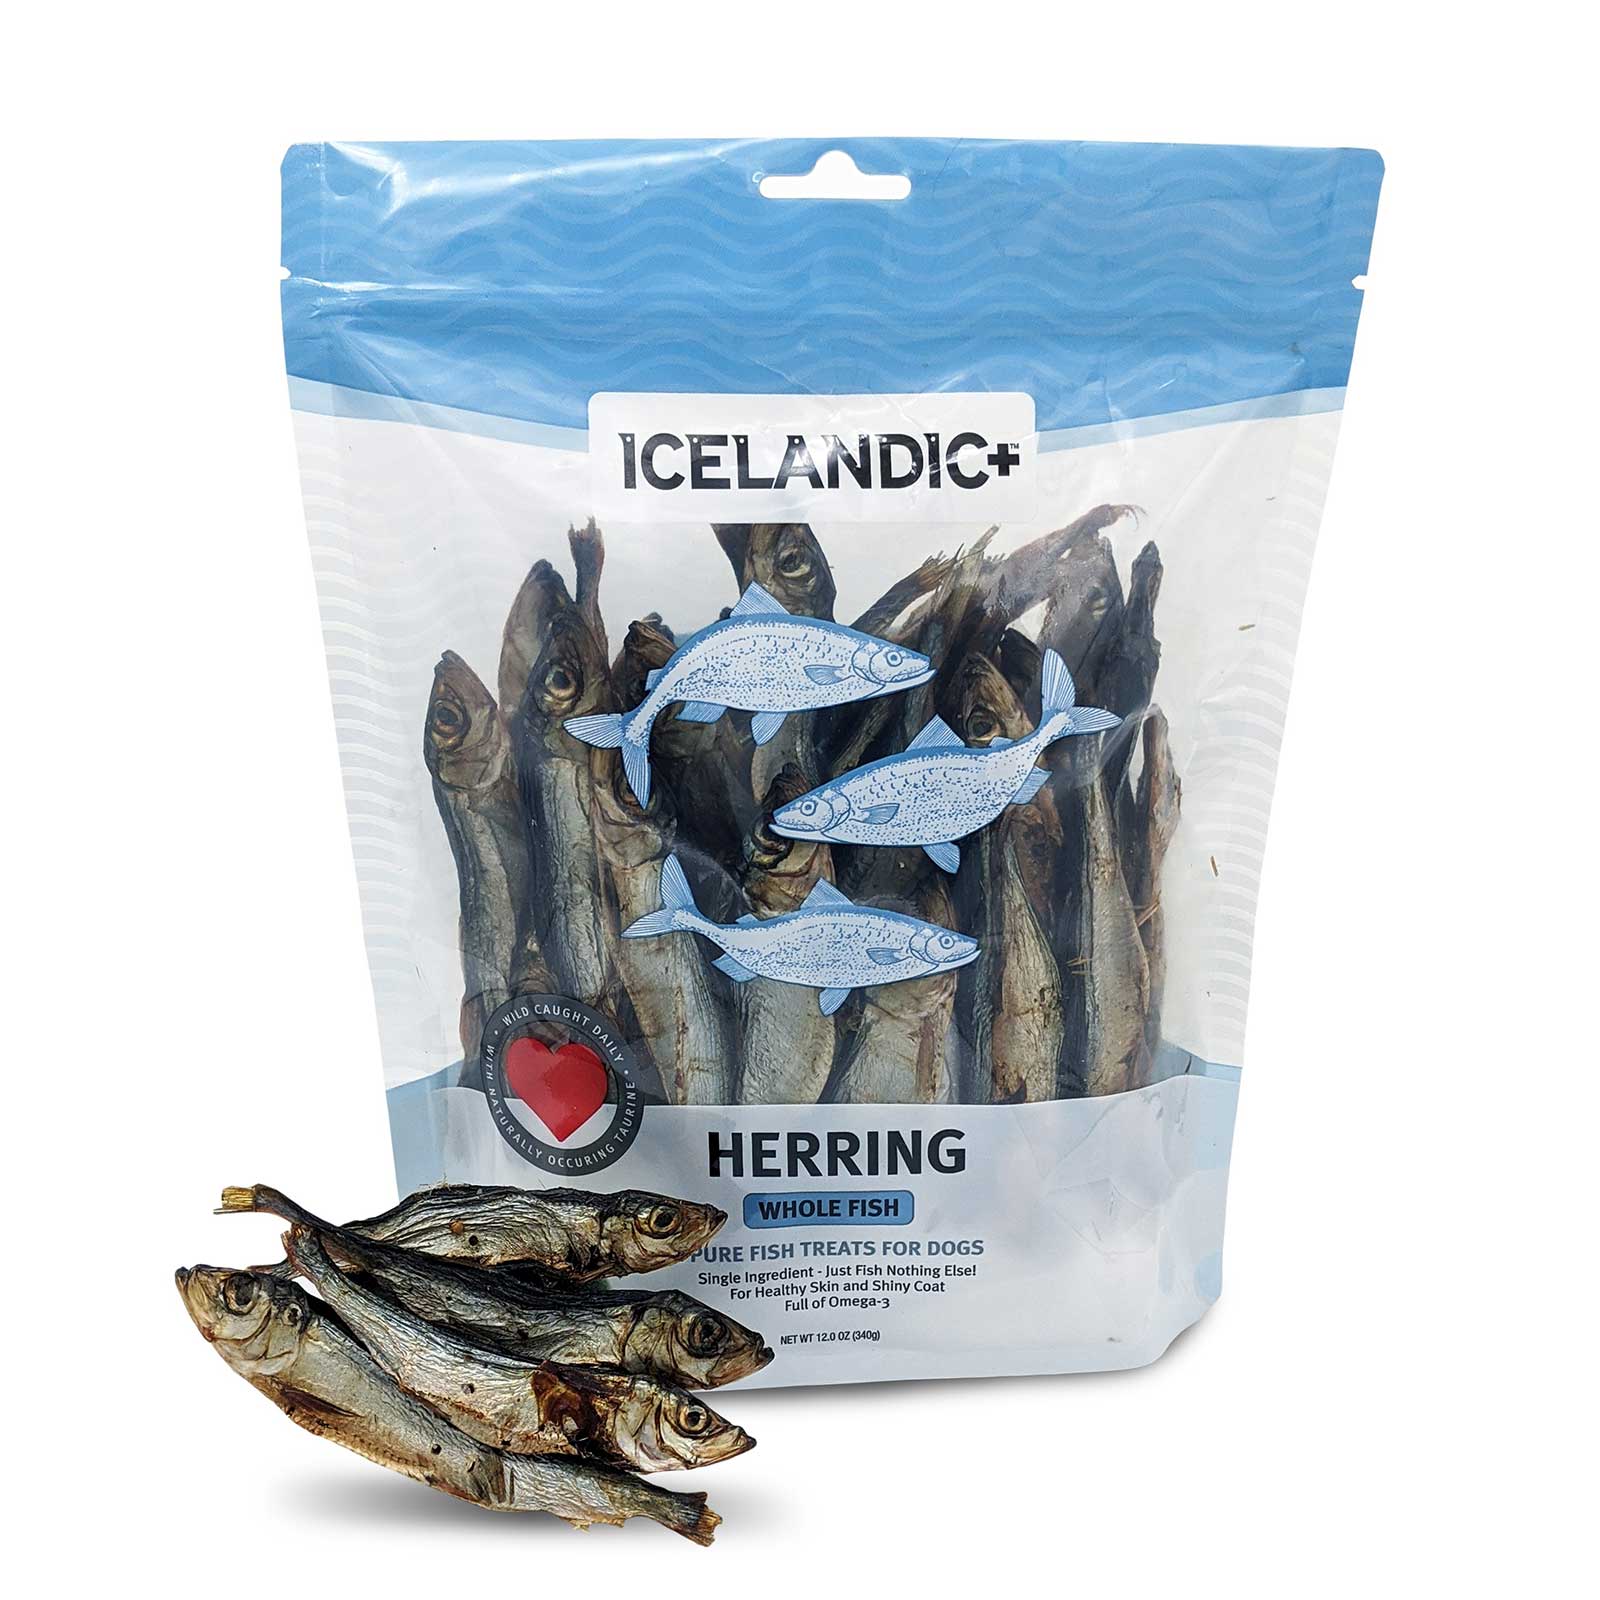 Icelandic Herring Whole Fish Dog Treat